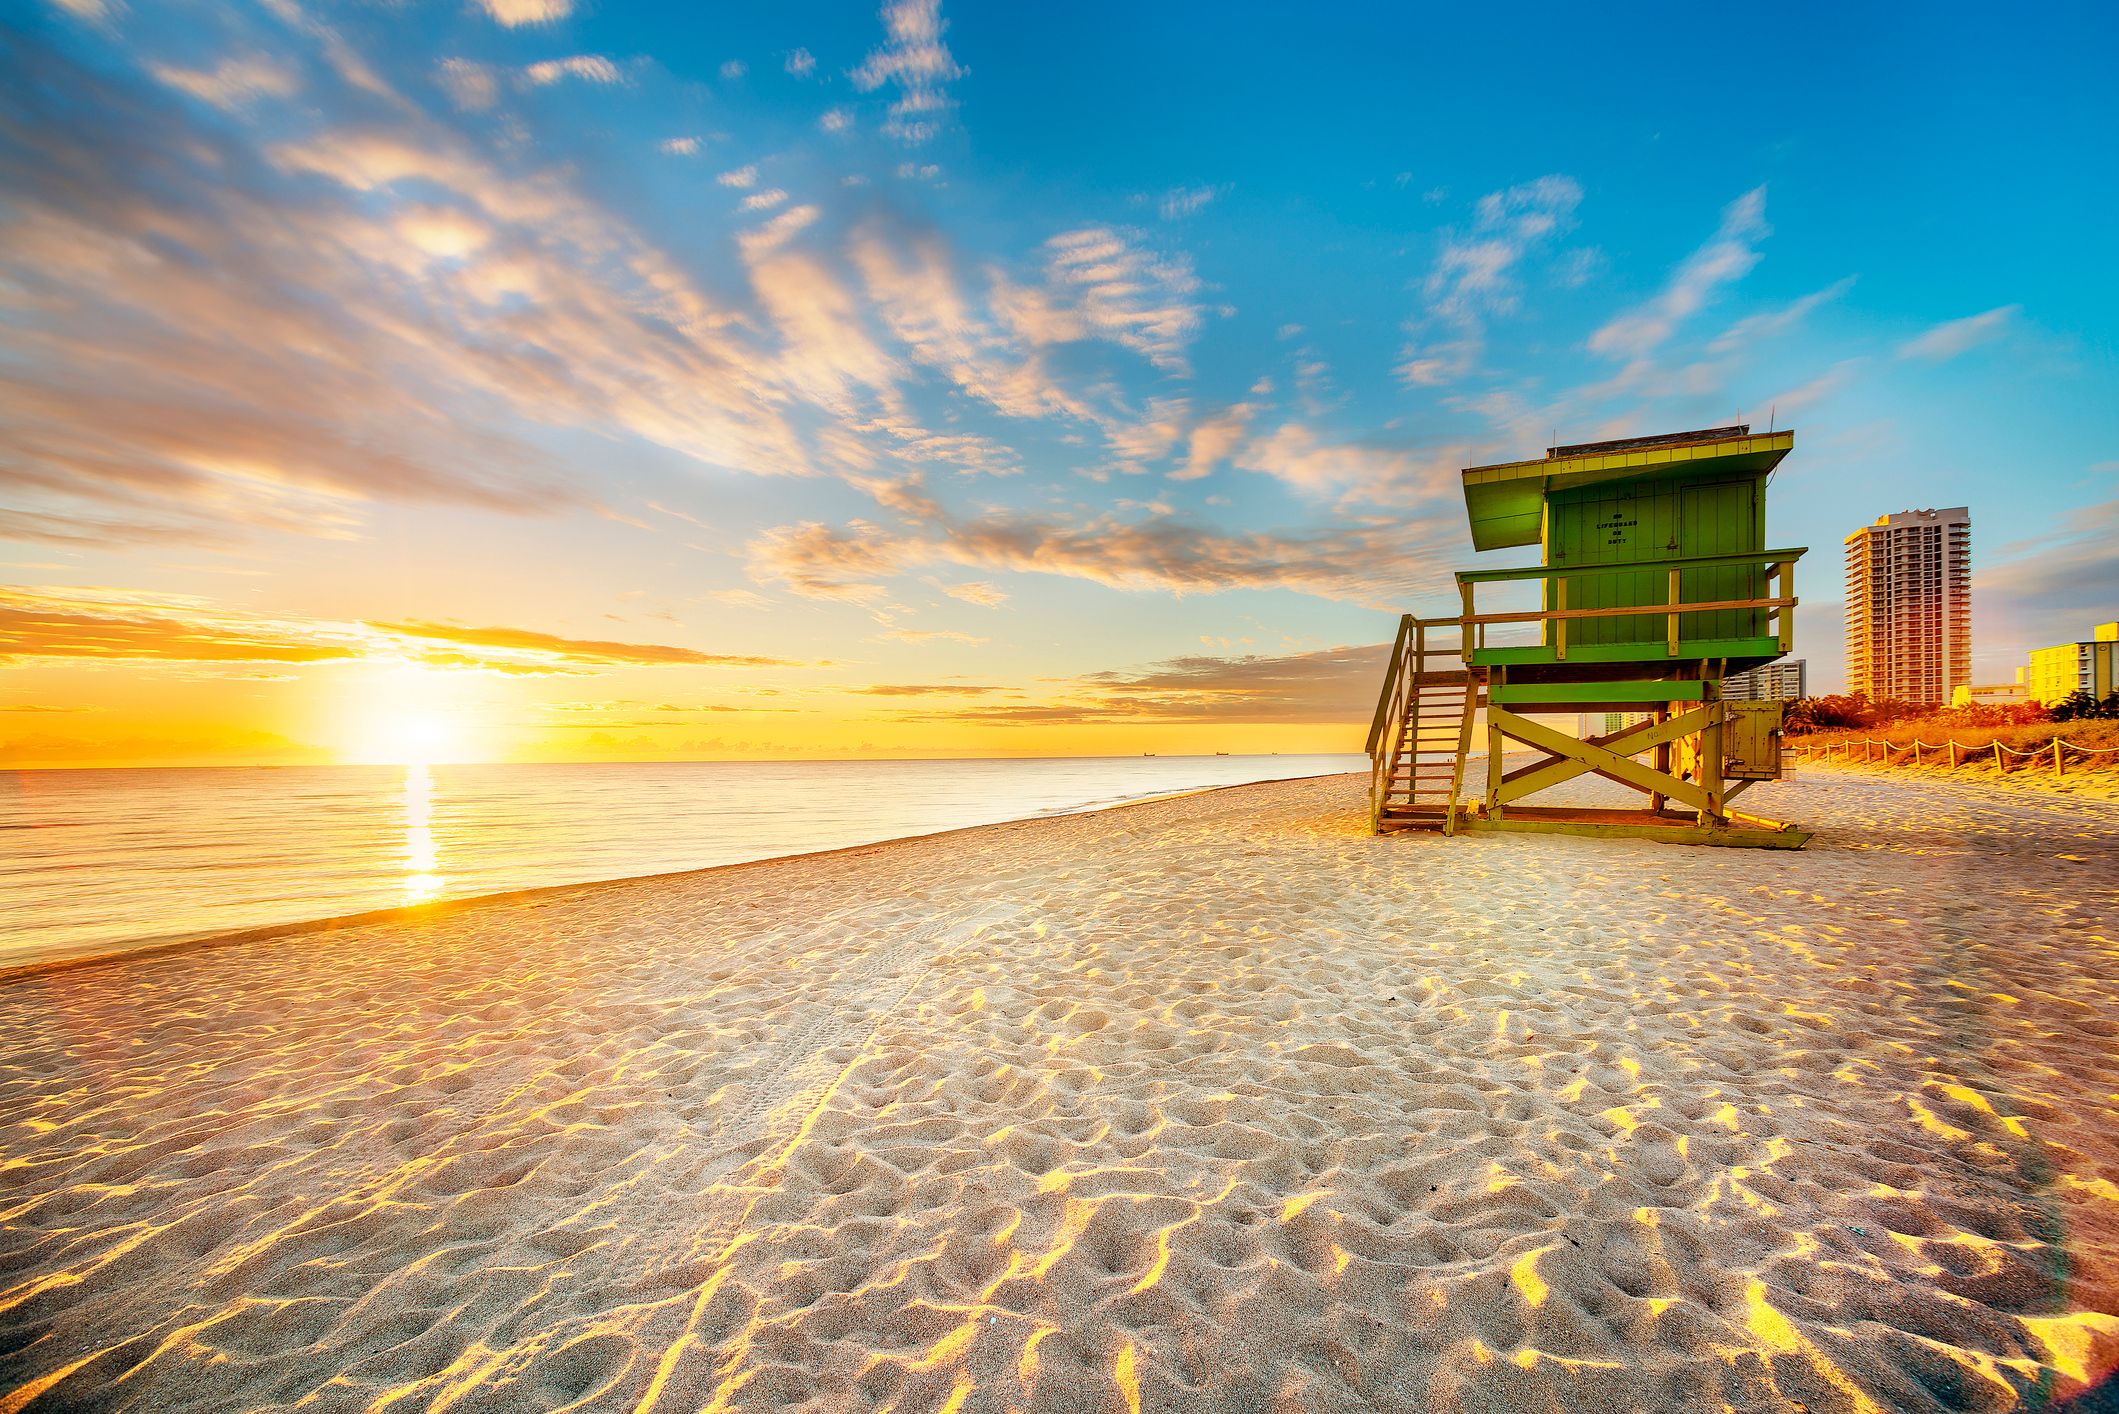 Florida Beach at sunset